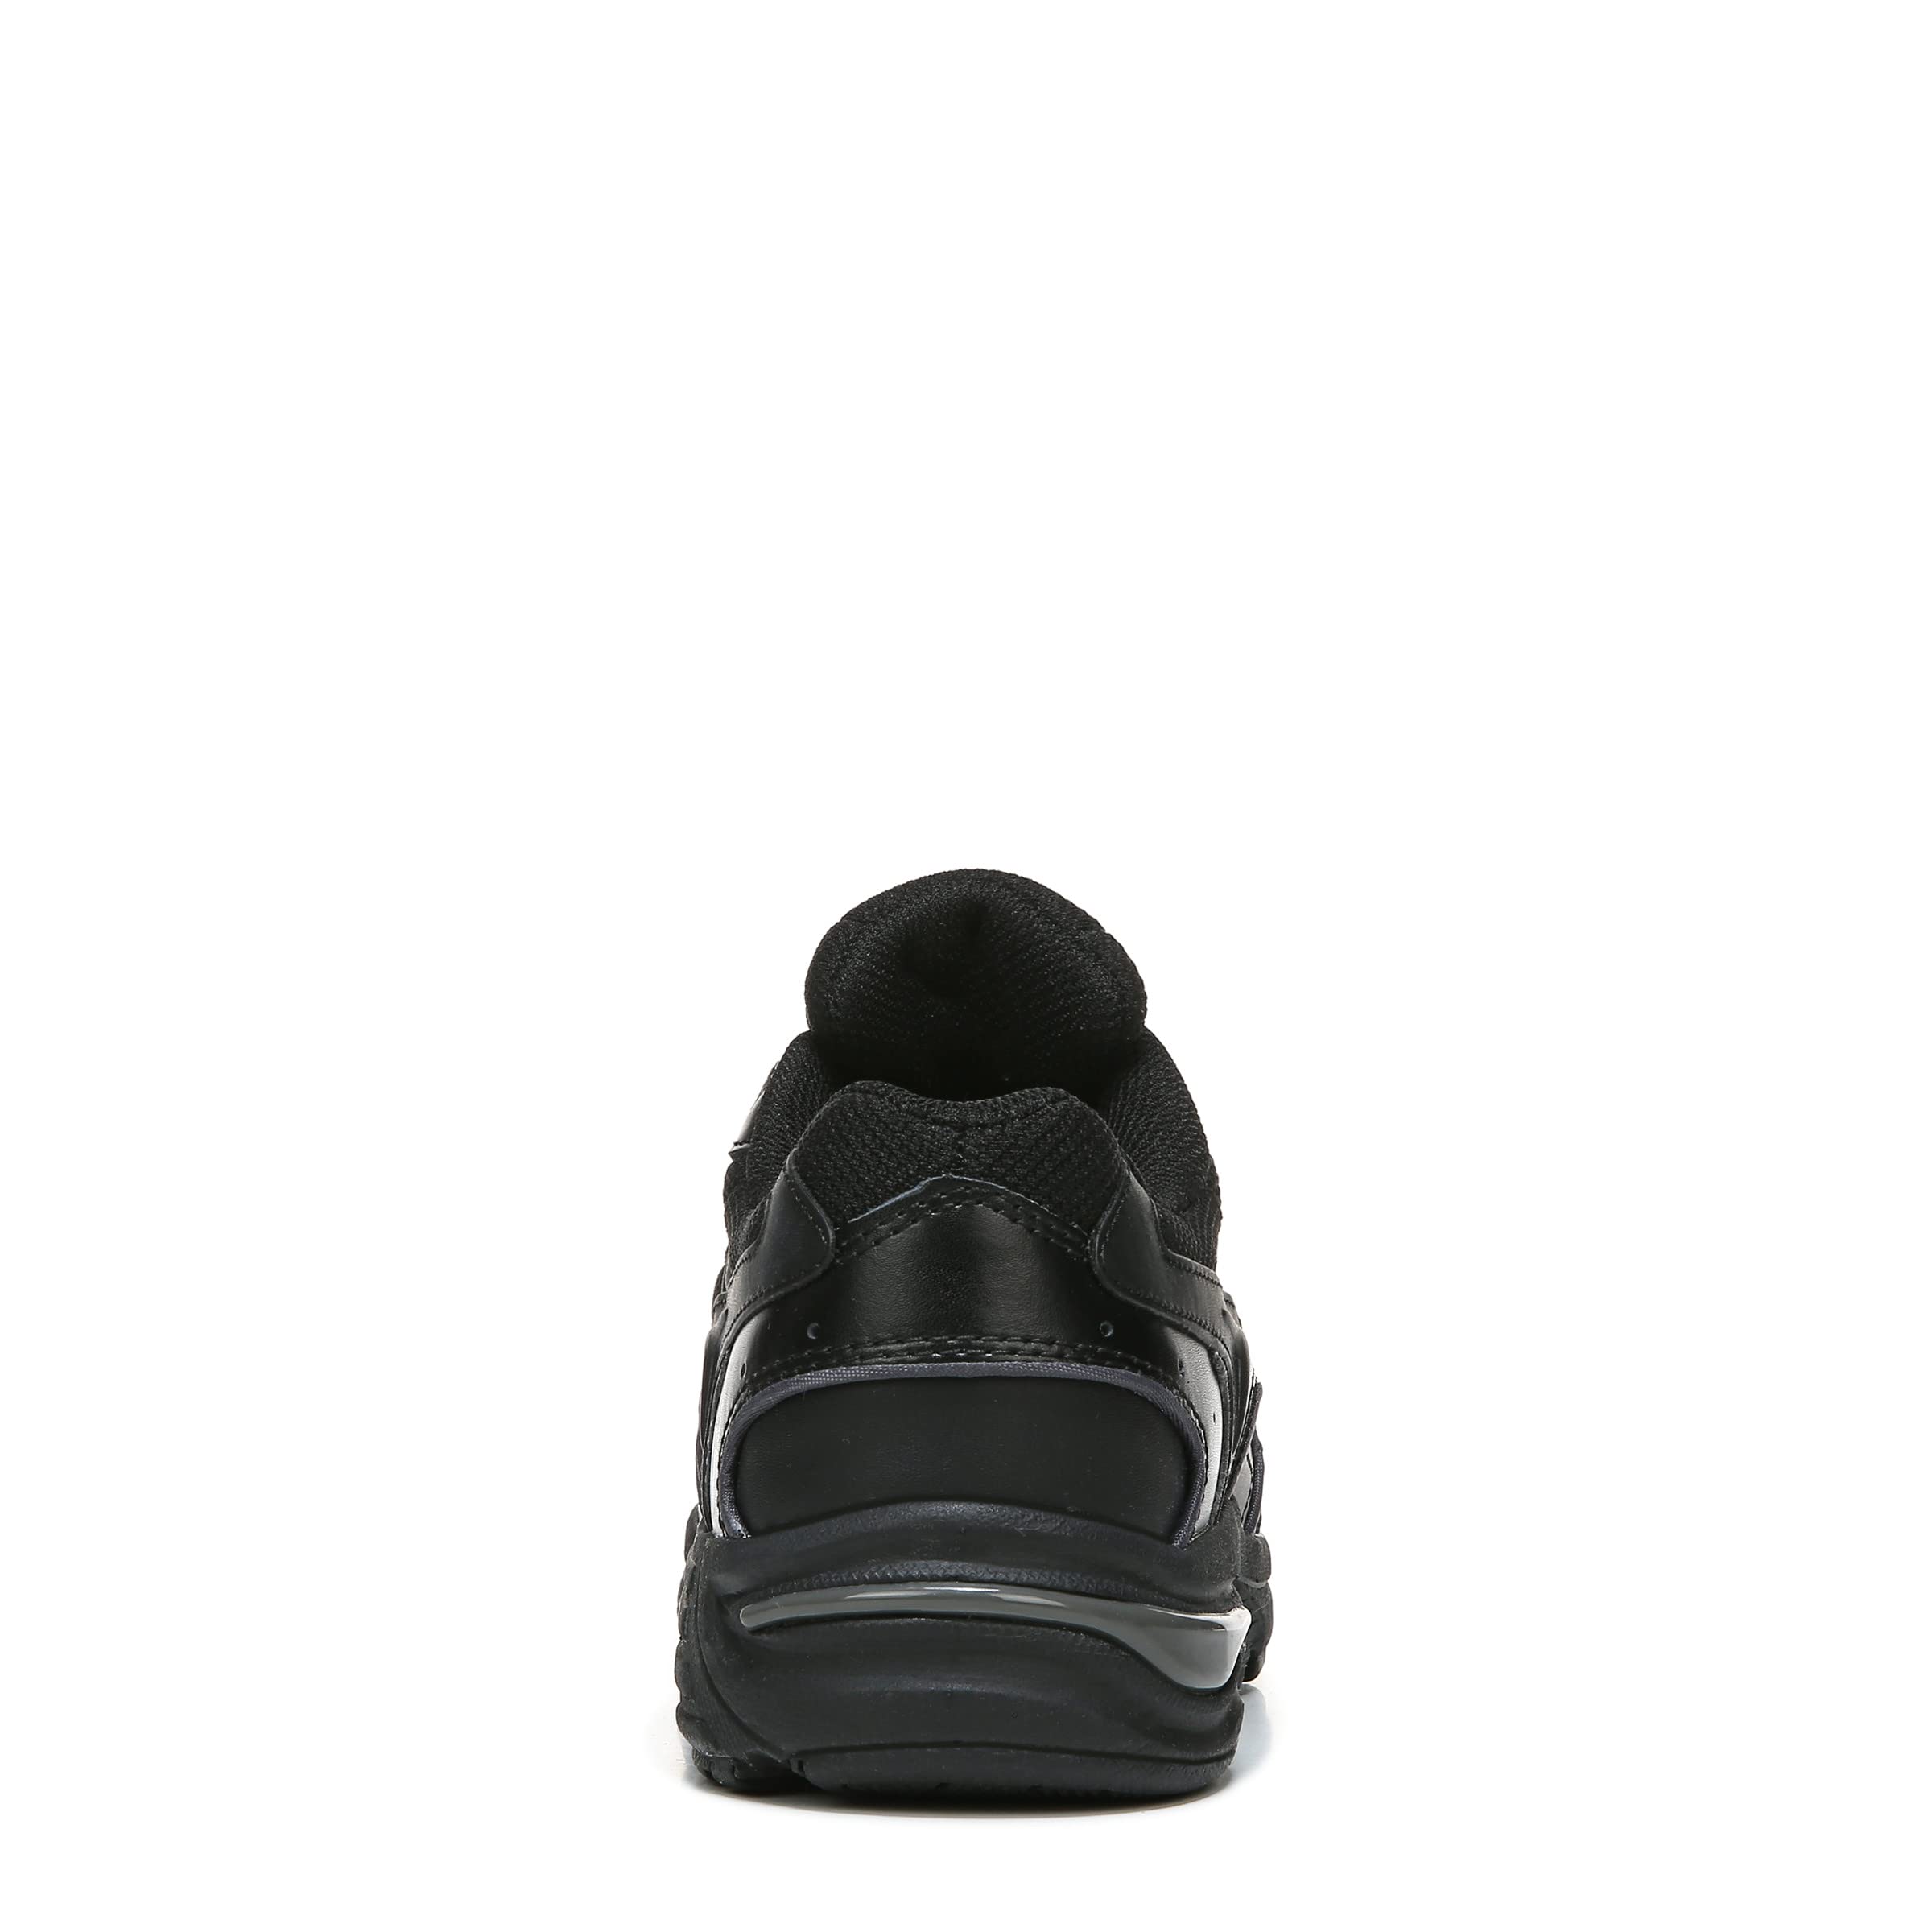 Vionic Men's Walker Classic Shoes, 13 D(M) US, Black